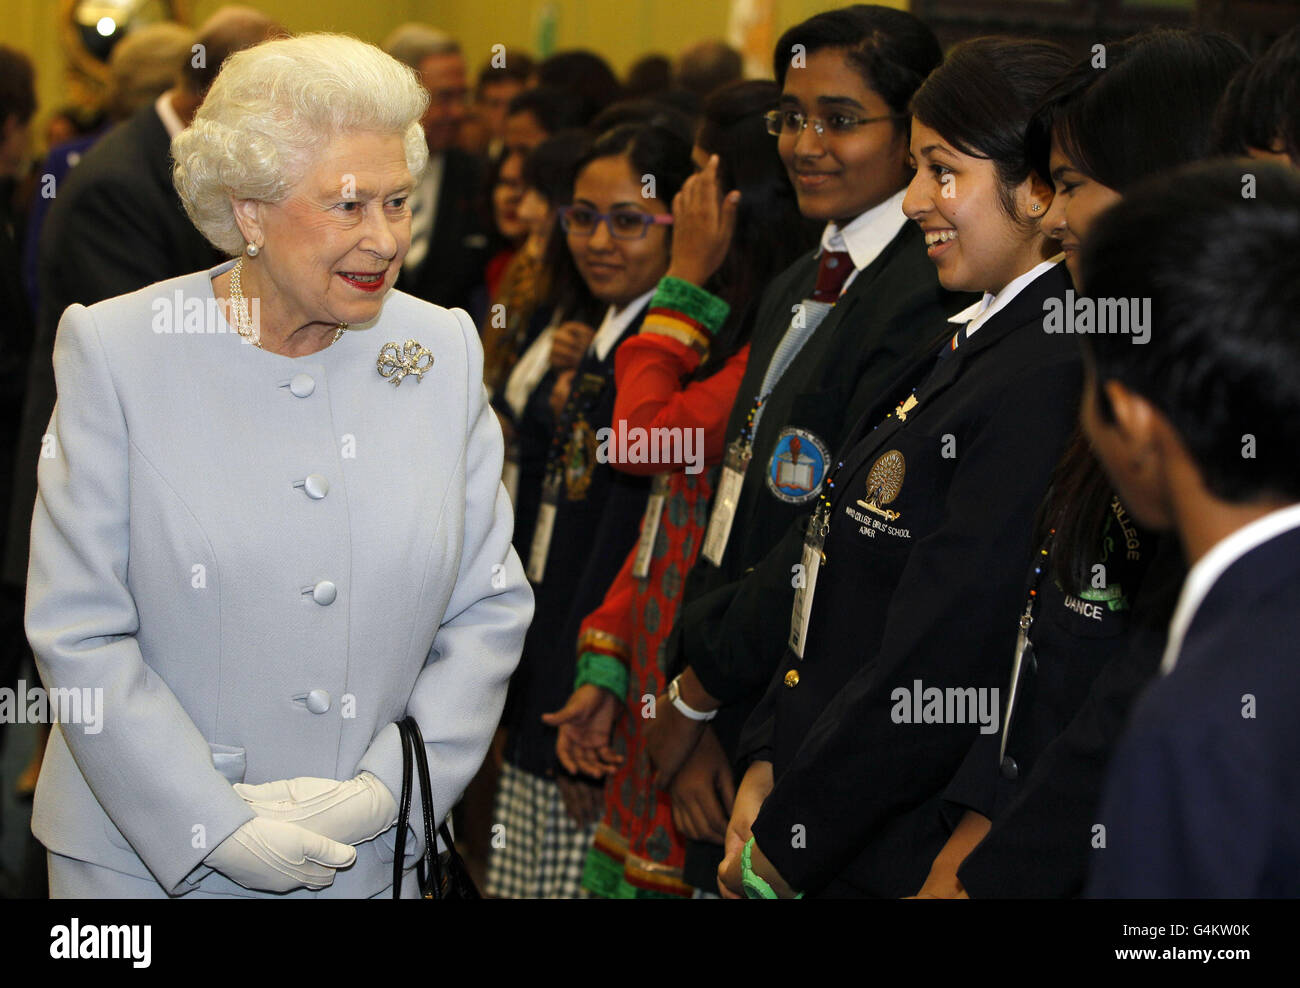 La regina Elisabetta II (a sinistra) incontra gli studenti dopo aver aperto ufficialmente la Round Square International Conference al Wellington College, Crowthorne, Berkshire, Inghilterra. Foto Stock